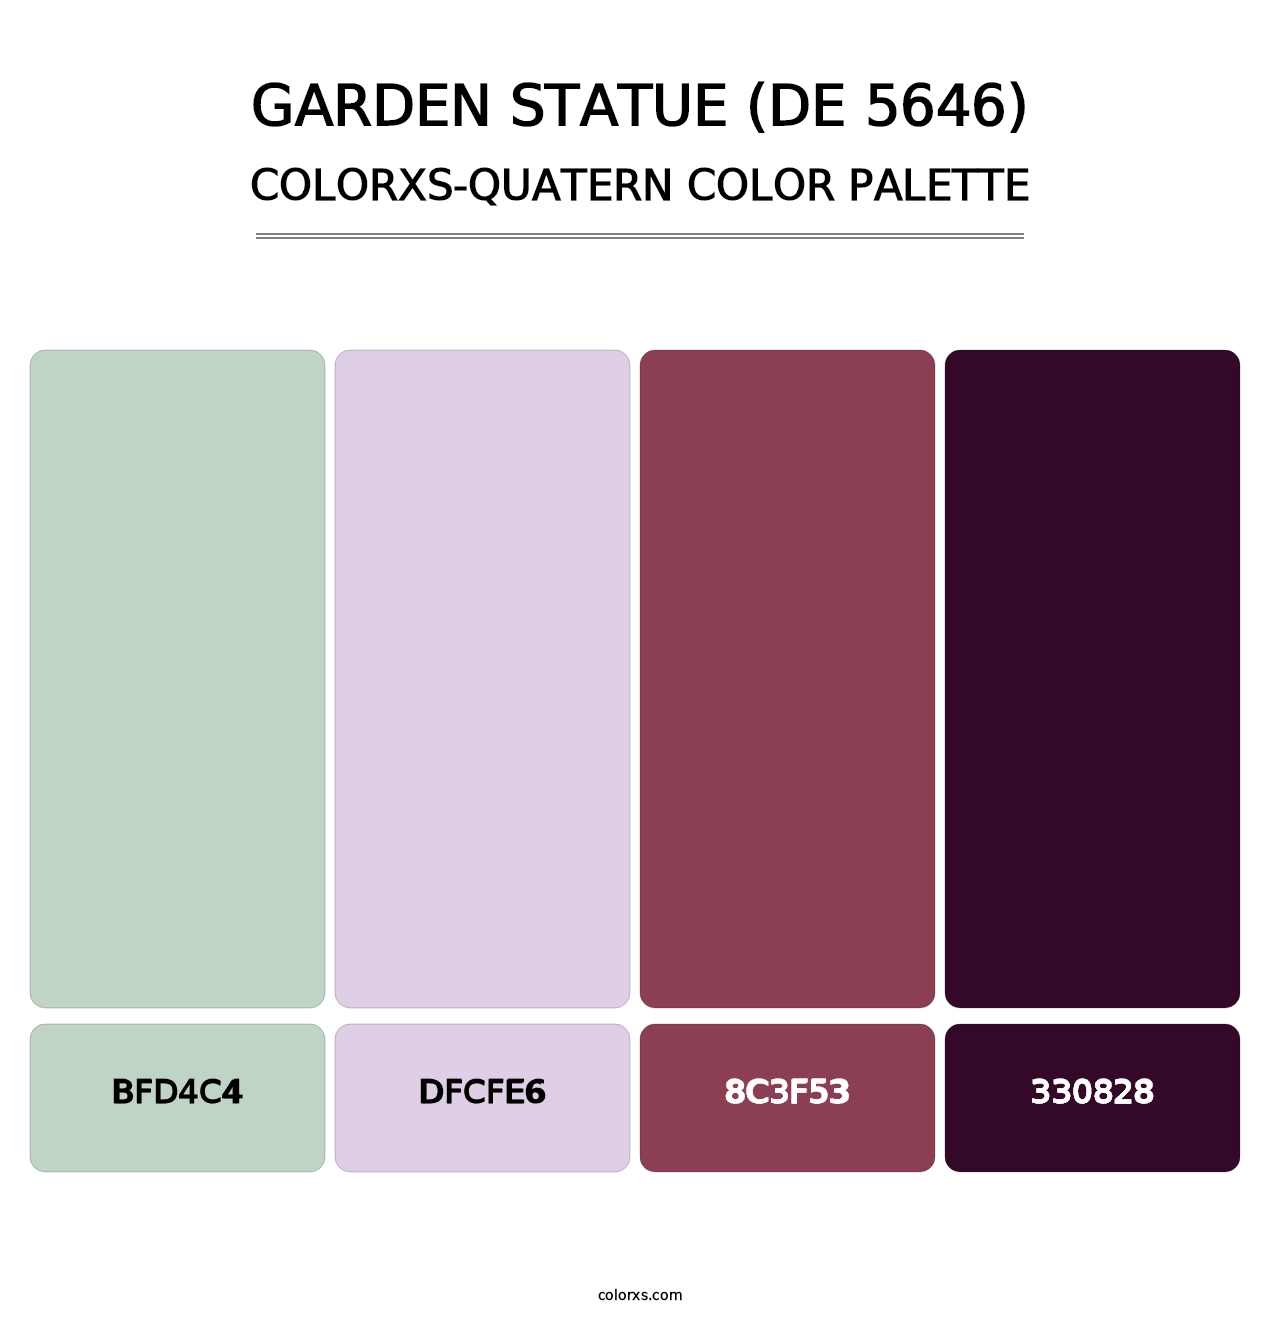 Garden Statue (DE 5646) - Colorxs Quatern Palette